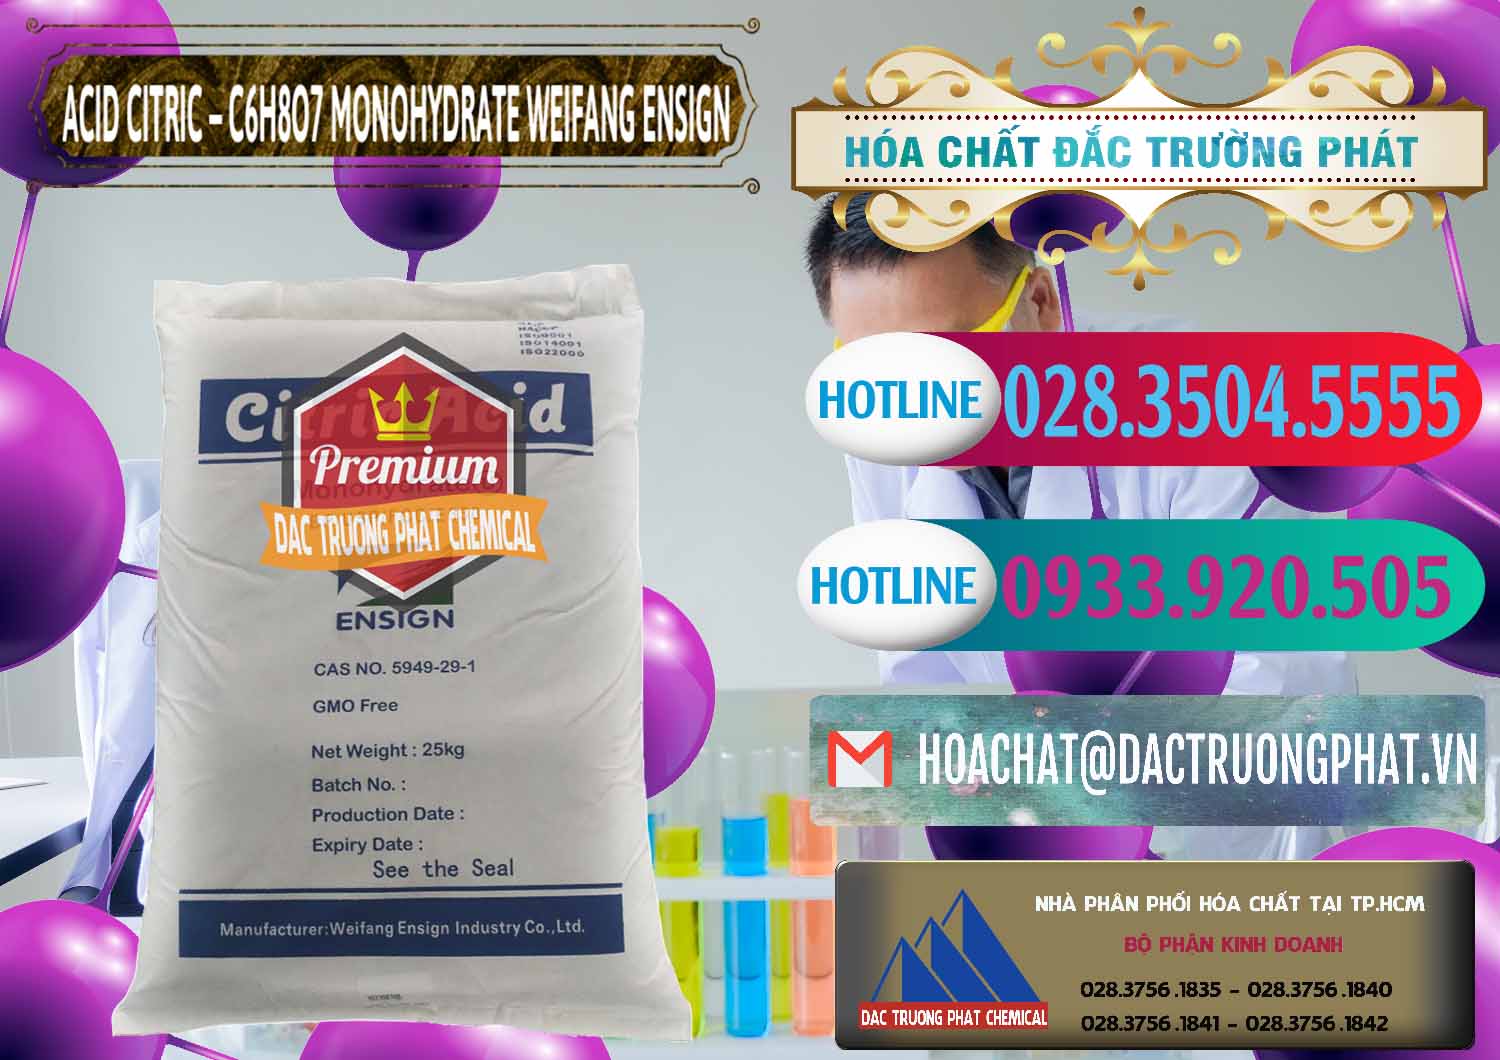 Công ty chuyên bán & cung cấp Acid Citric - Axit Citric Monohydrate Weifang Trung Quốc China - 0009 - Cty cung cấp - phân phối hóa chất tại TP.HCM - truongphat.vn